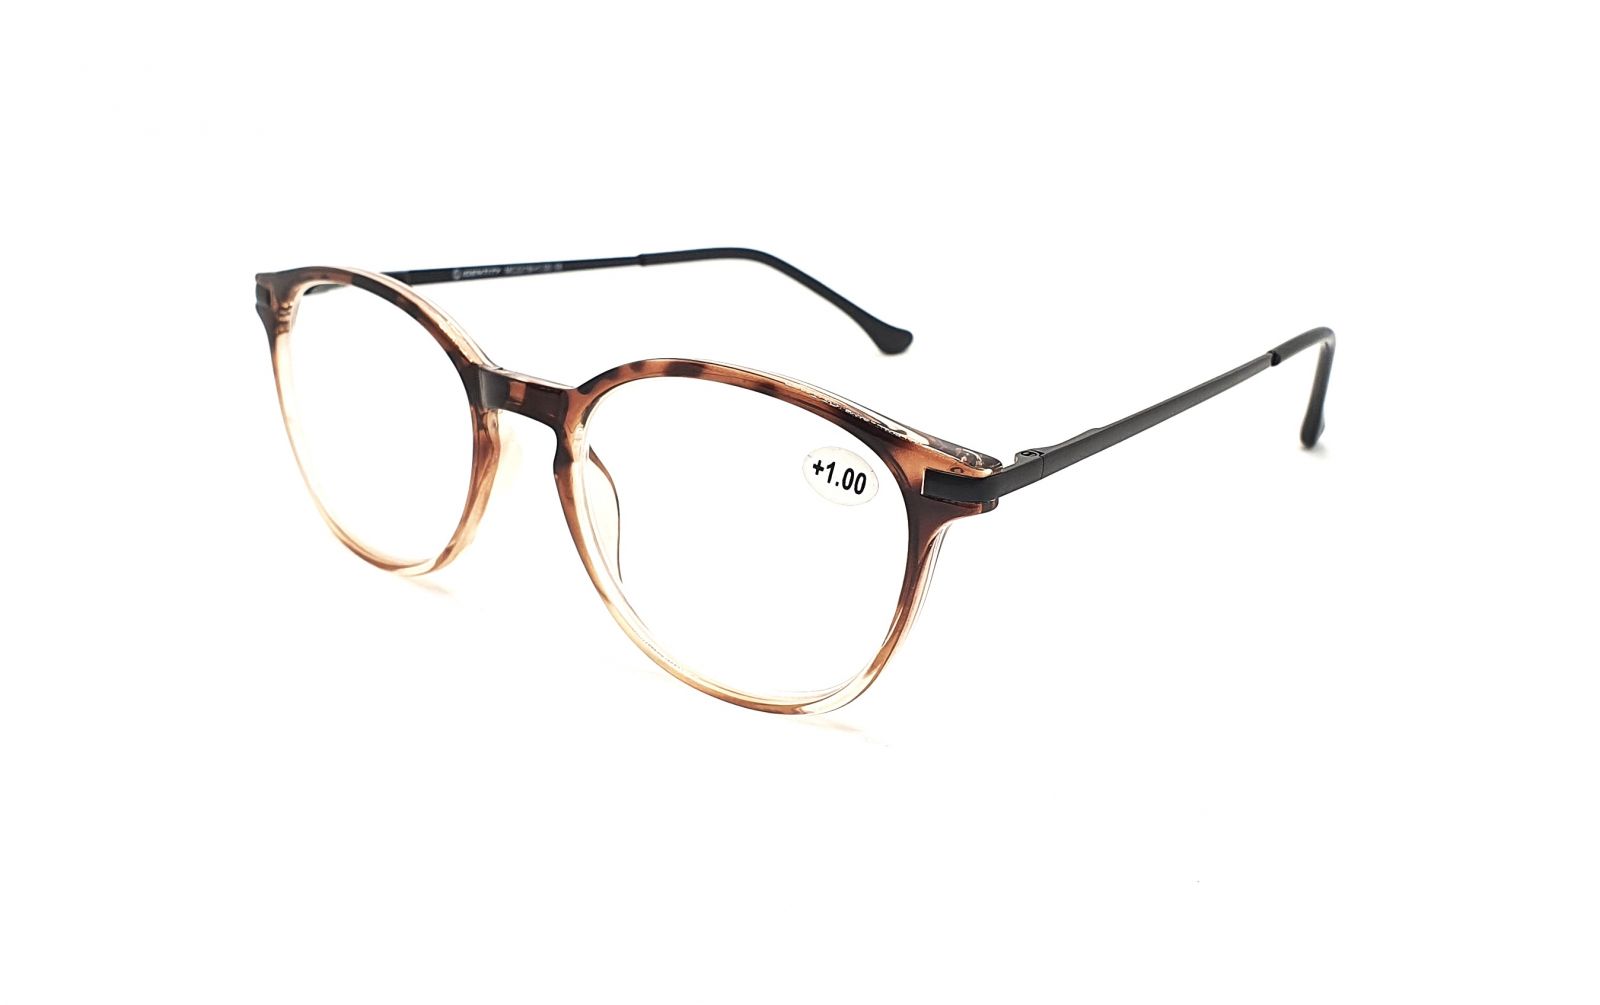 IDENTITY Dioptrické brýle MC2219 +2,00 flex brown